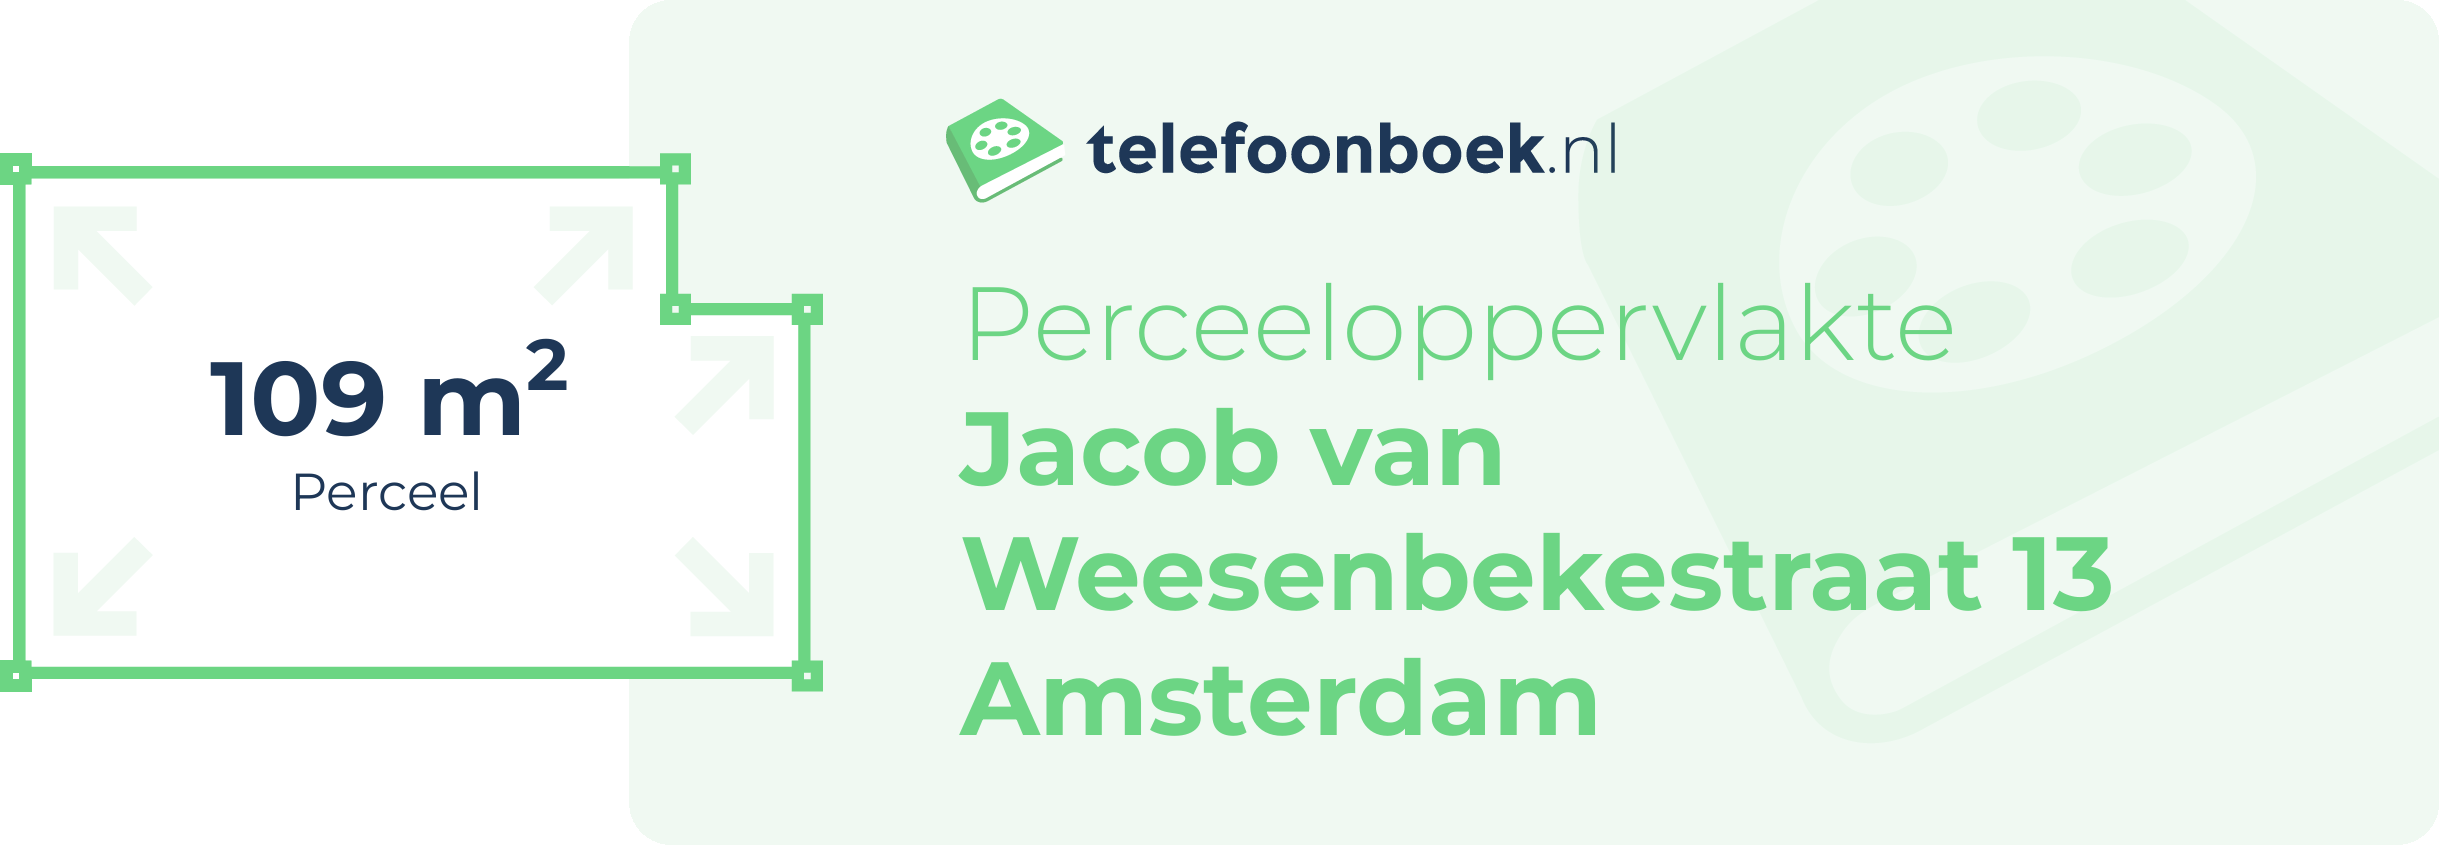 Perceeloppervlakte Jacob Van Weesenbekestraat 13 Amsterdam